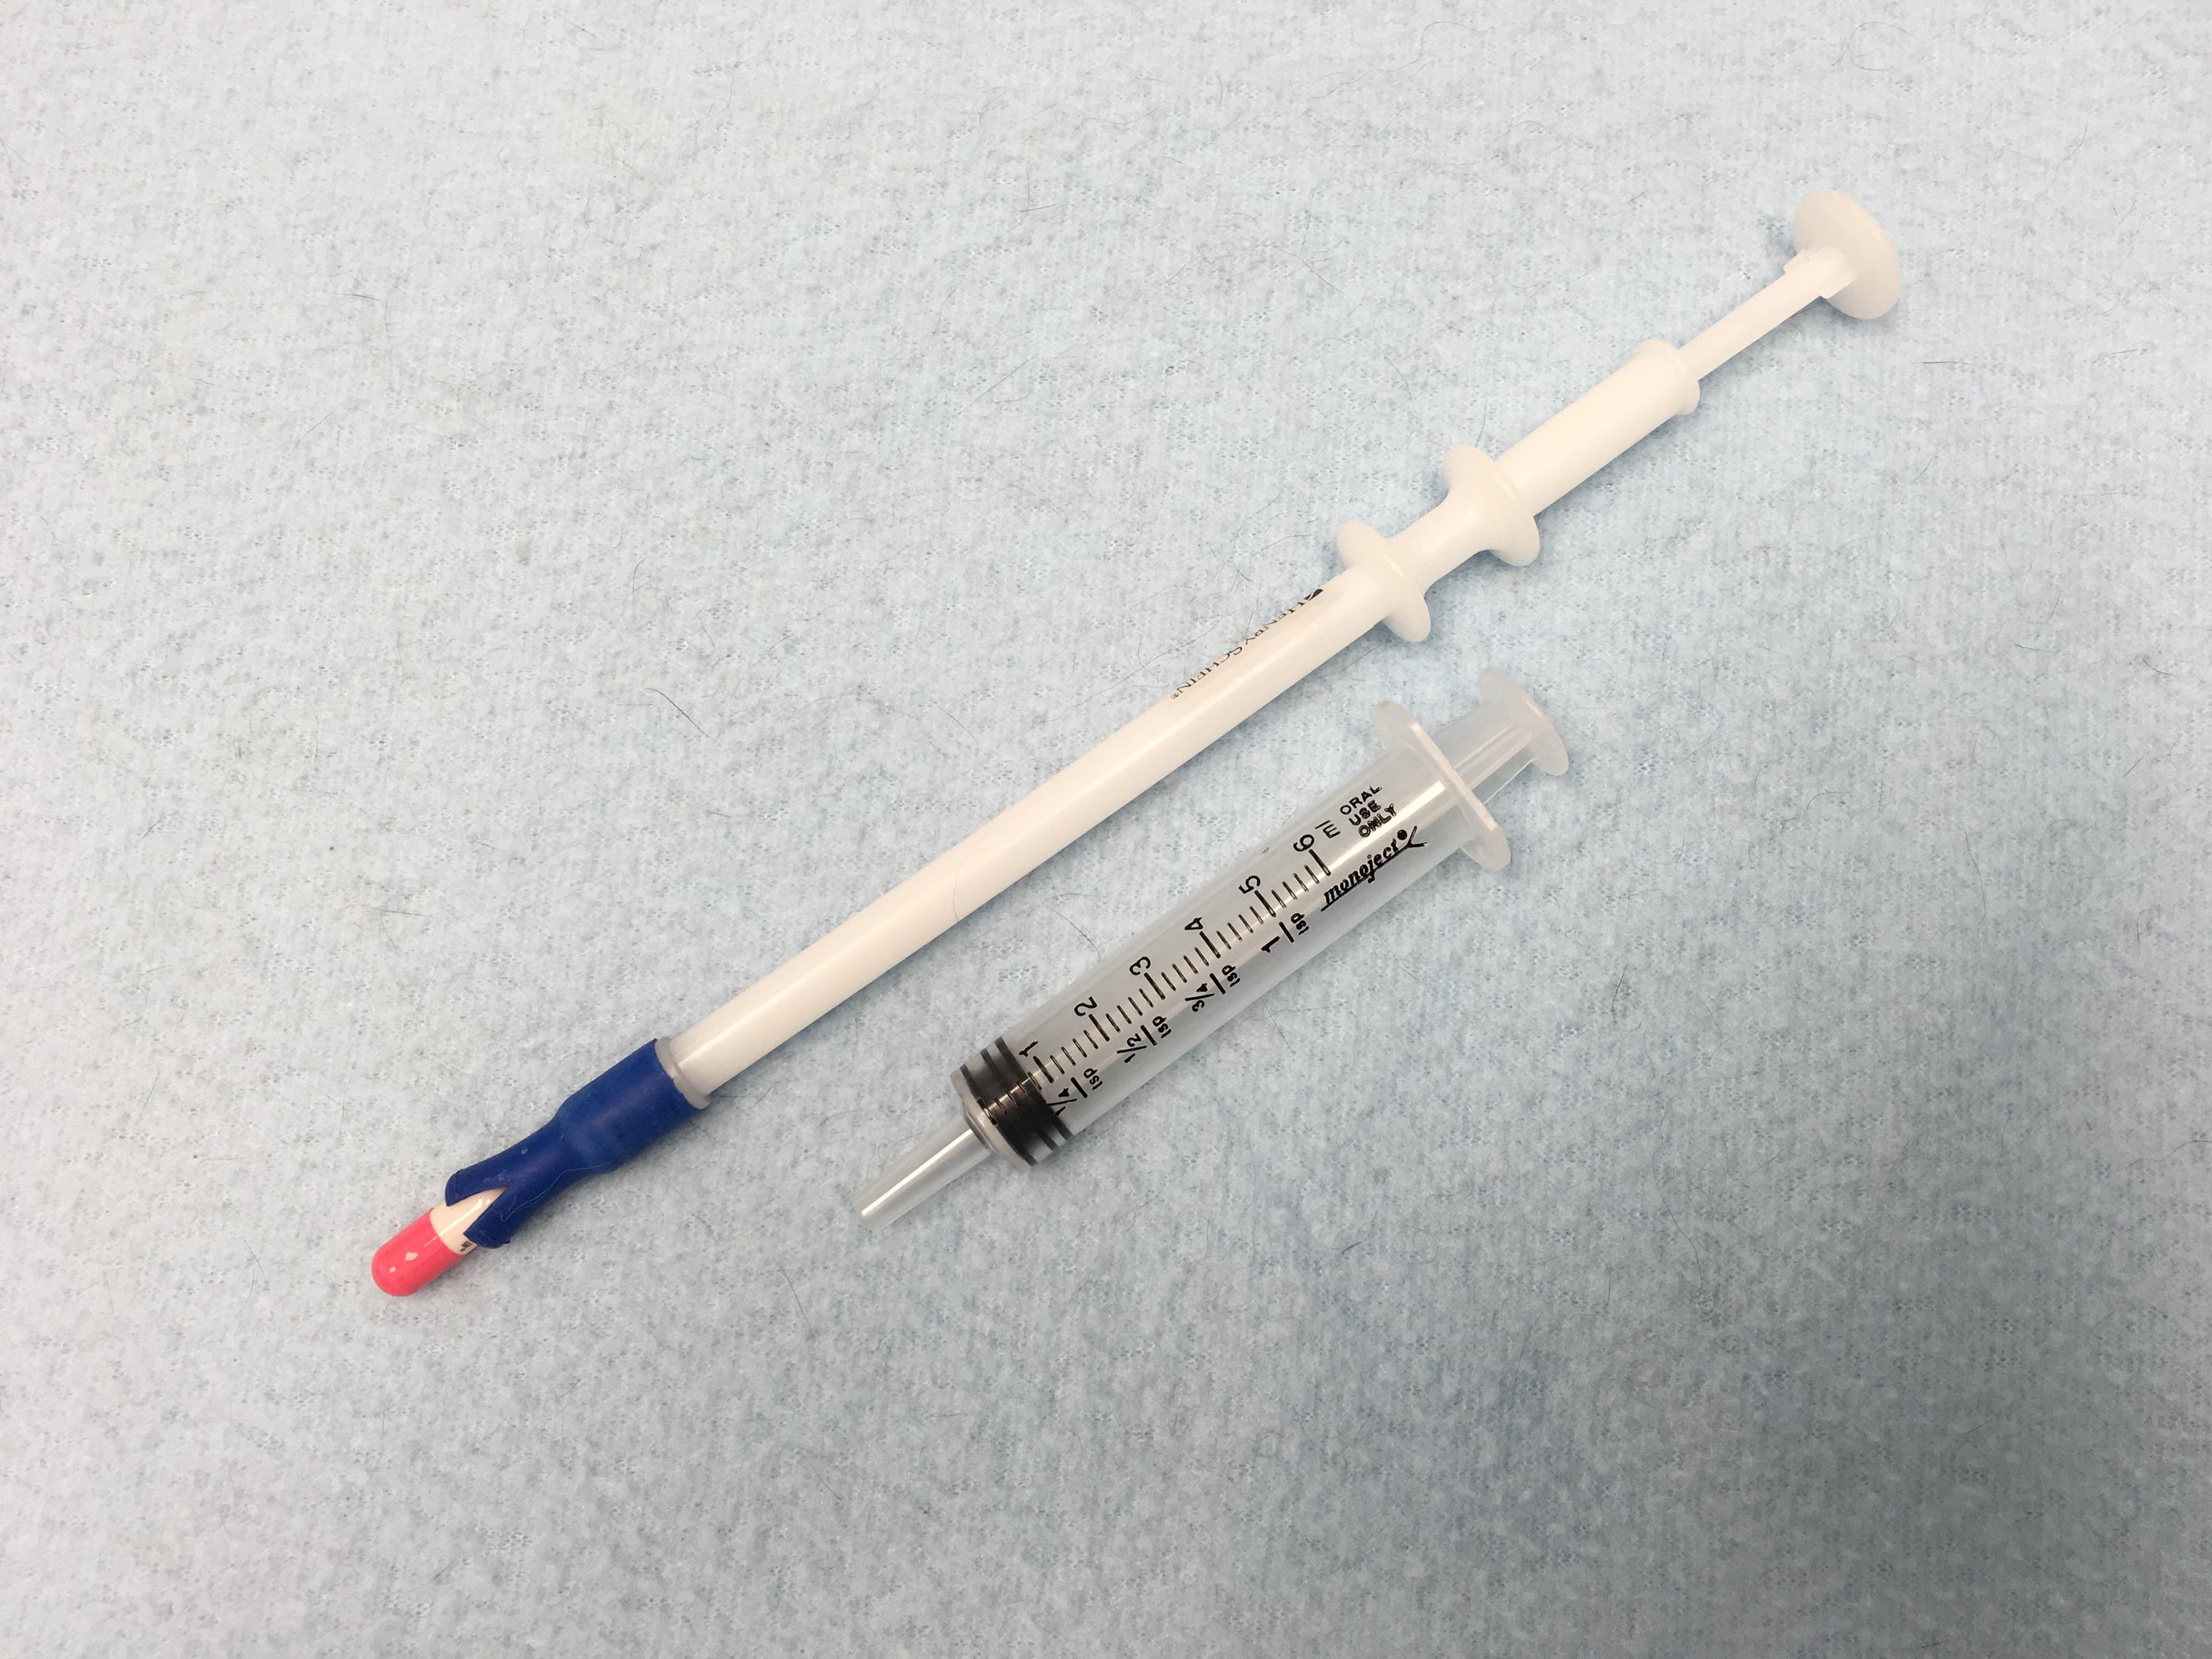 Oral syringe to chase meds with a food reward.